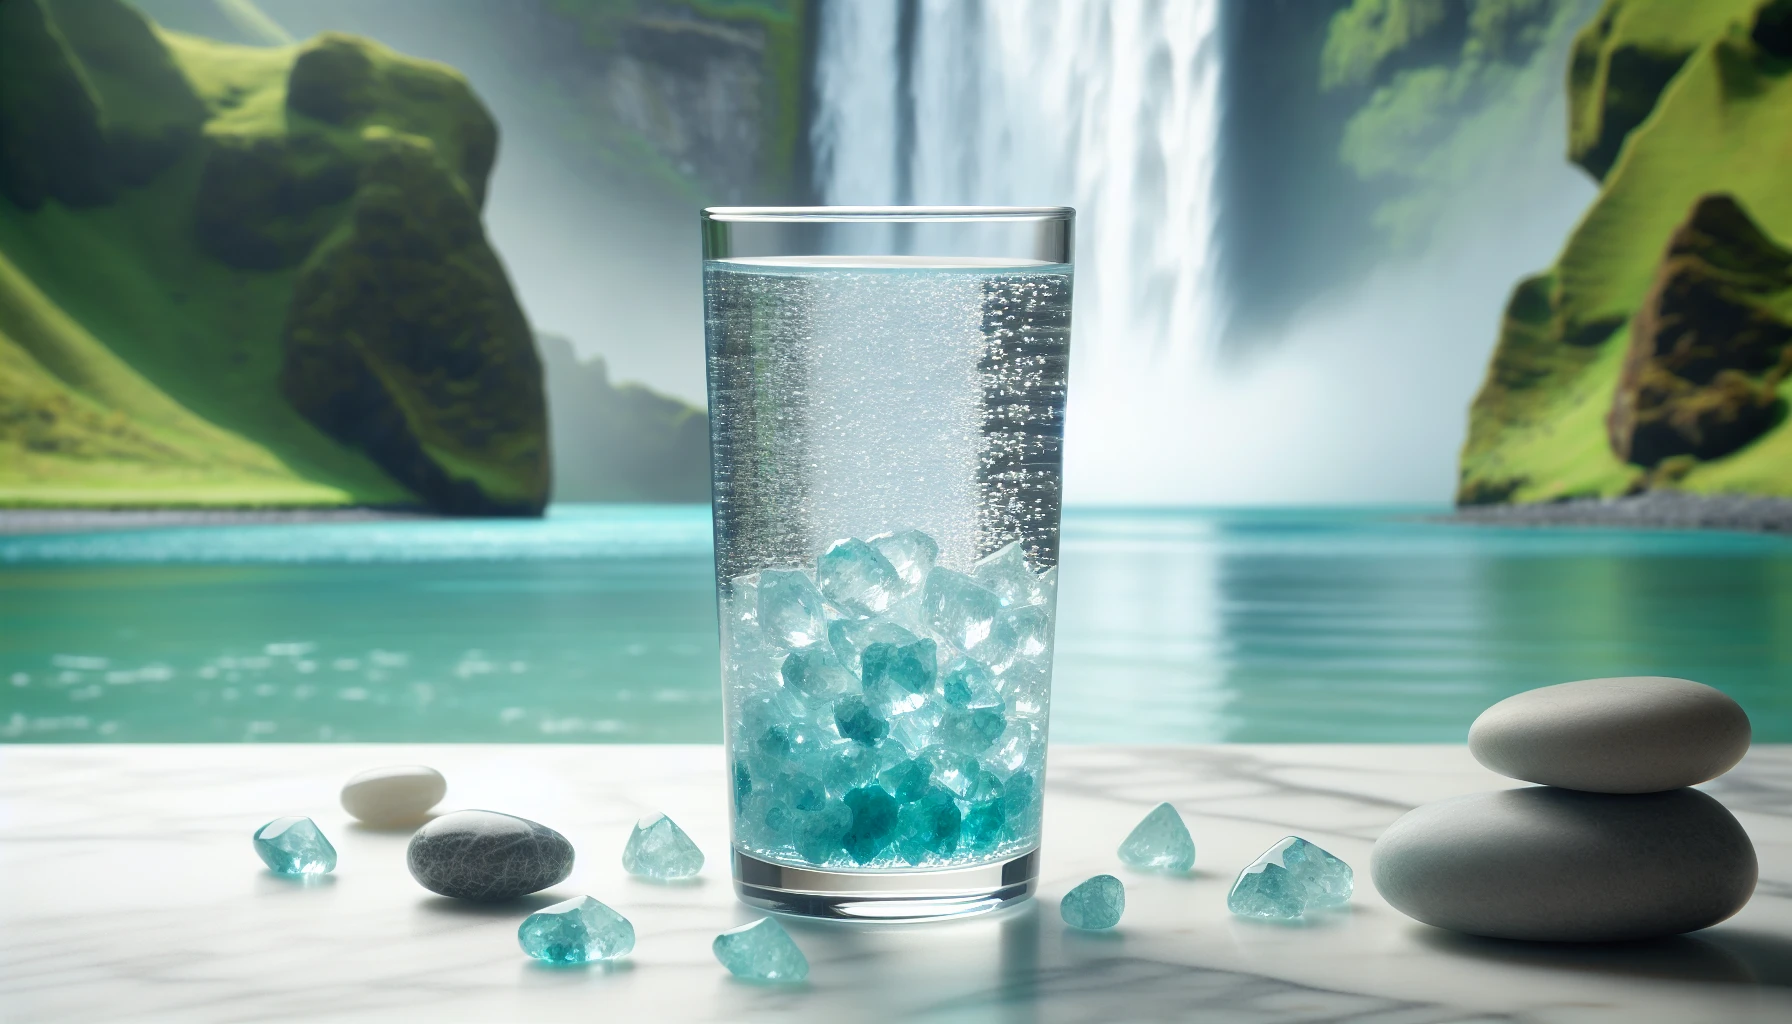 Aquamarine-infused water